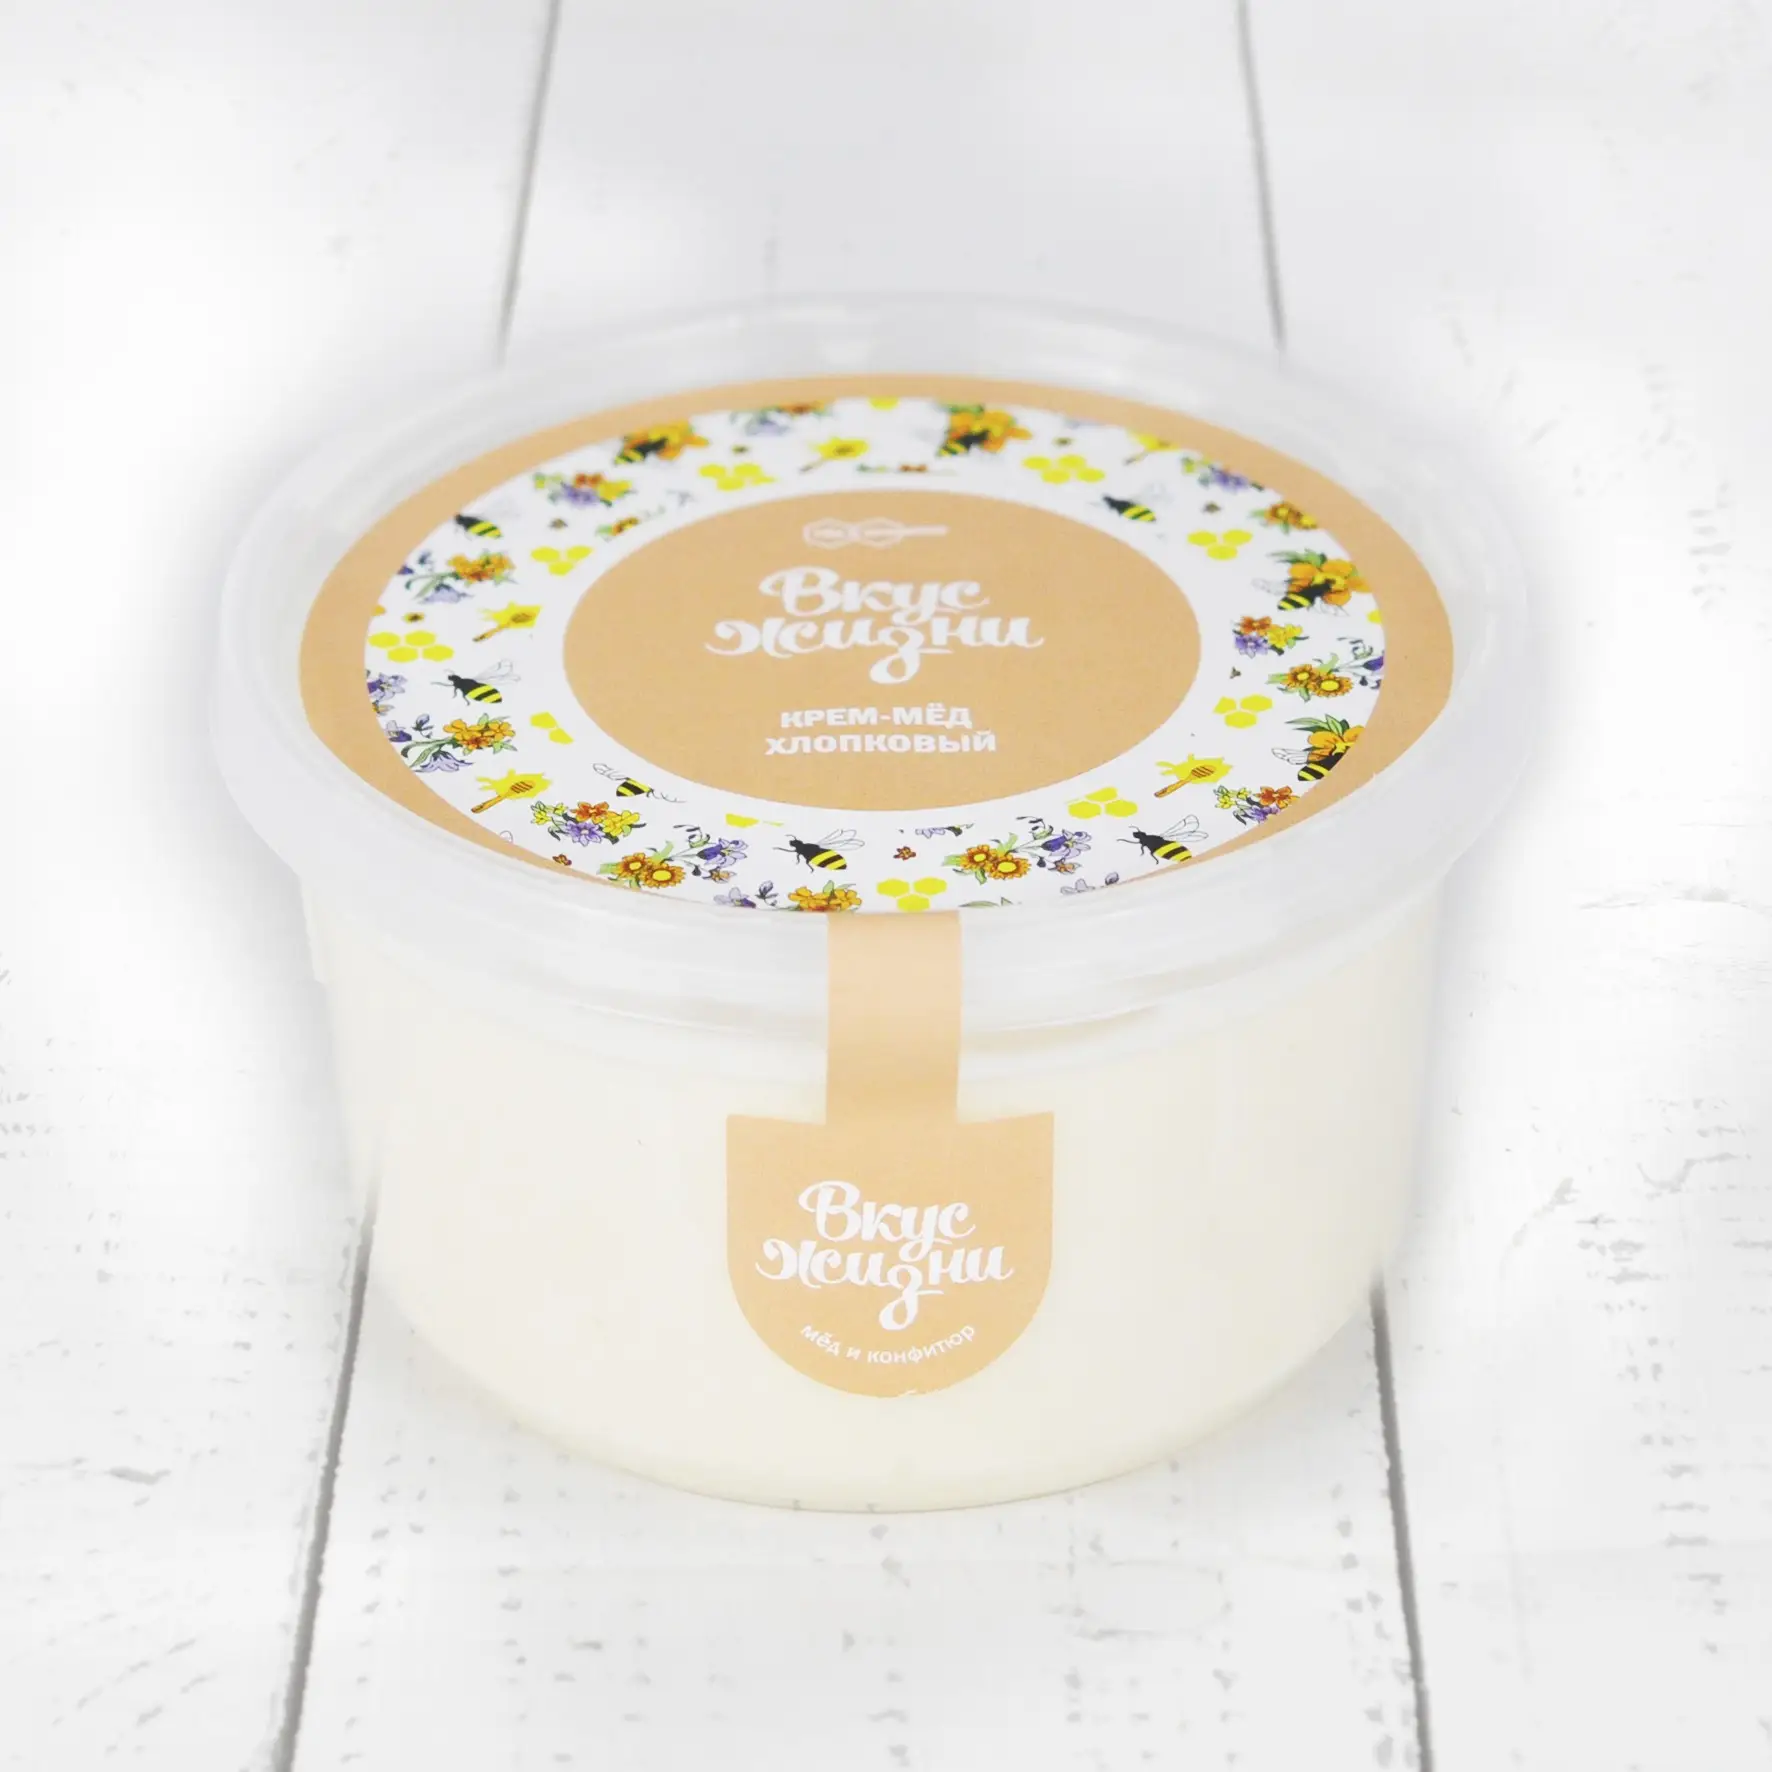 Крем-мёд хлопковый в пластиковой банке Вкус Жизни New 300 гр.  